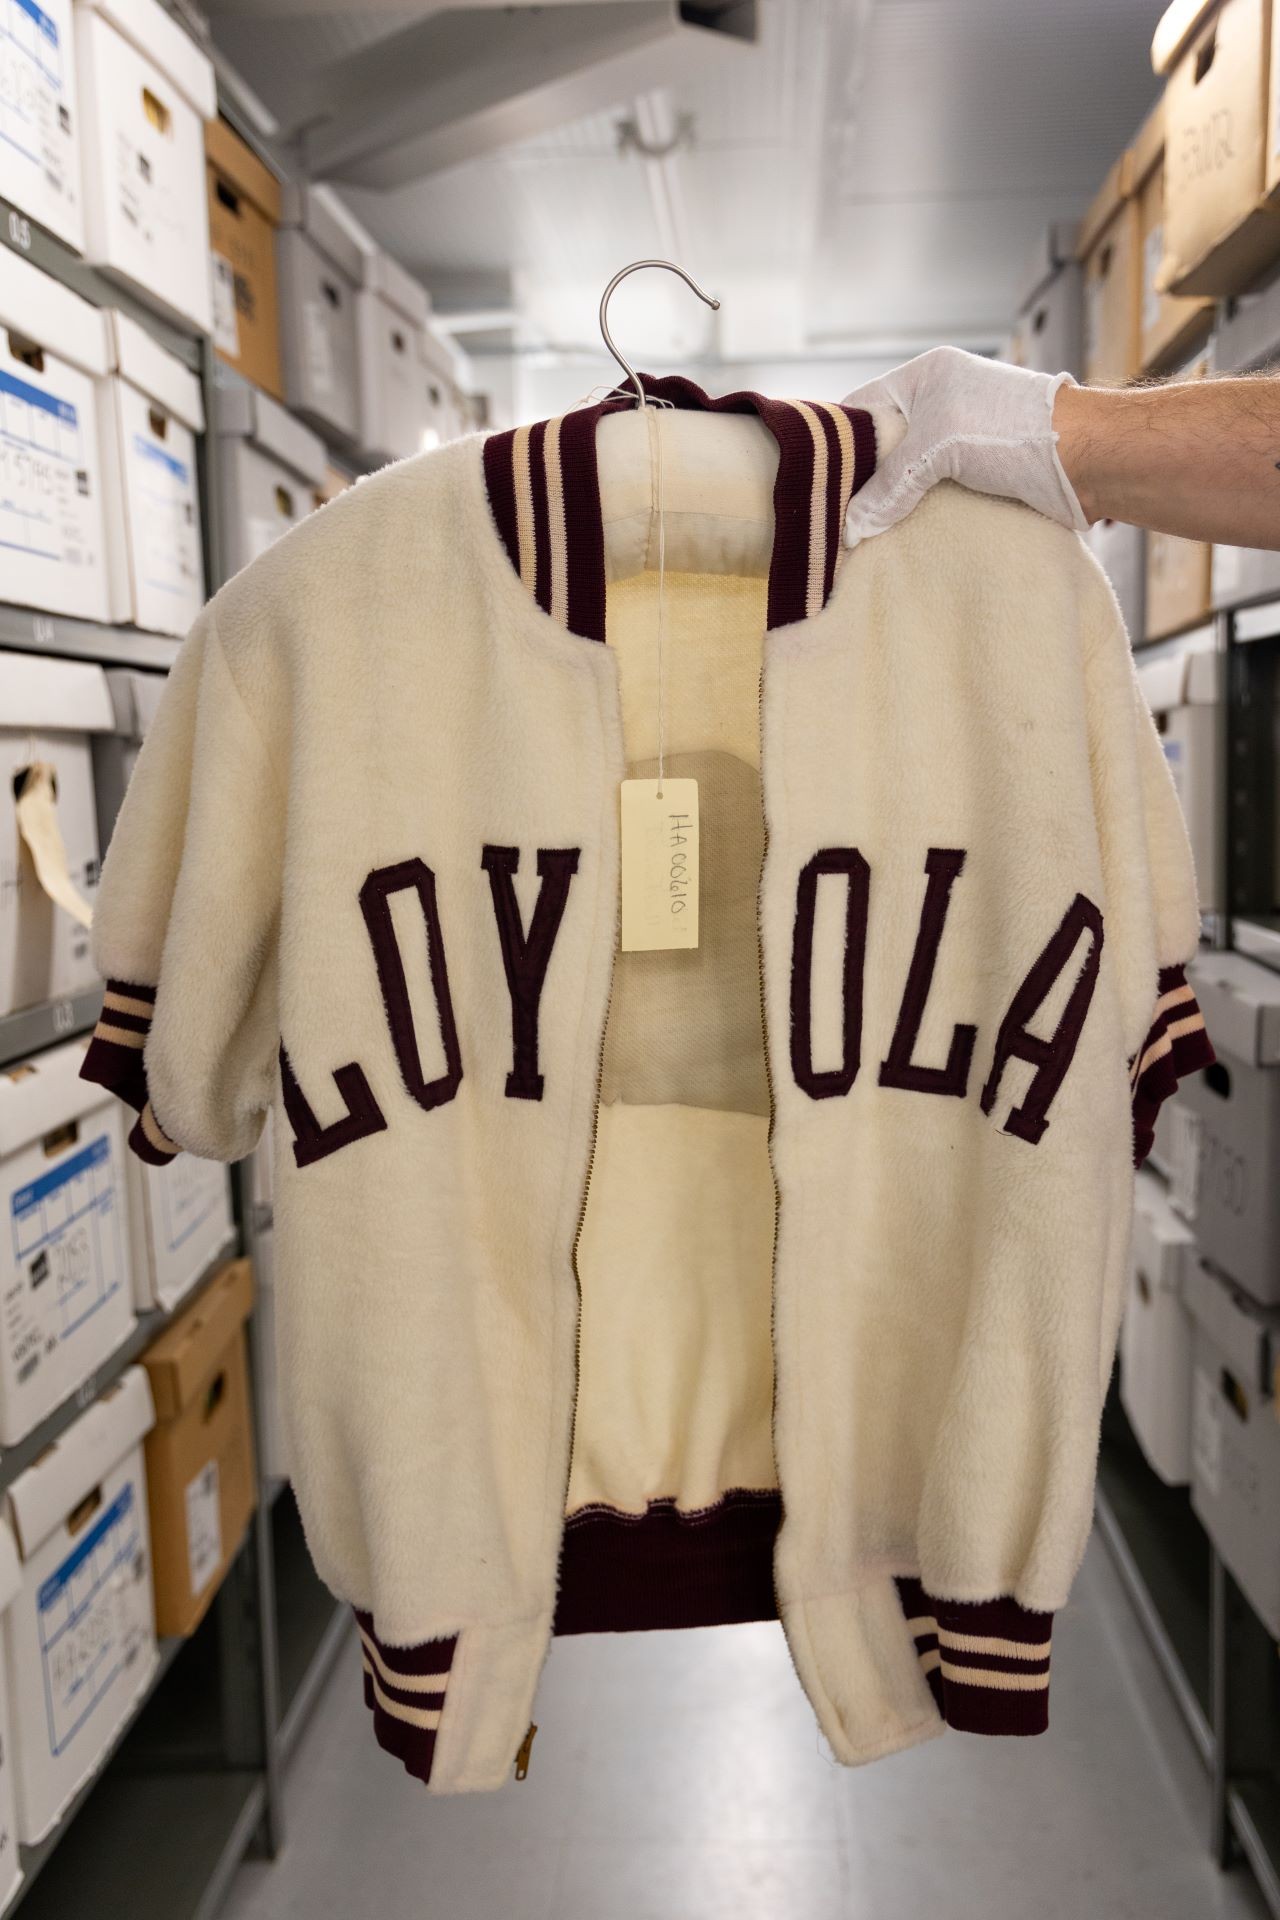 Une main tient une veste universitaire classique avec le texte « LOYOLA », symbolisant l'héritage et l'histoire sportive du collège Loyola.